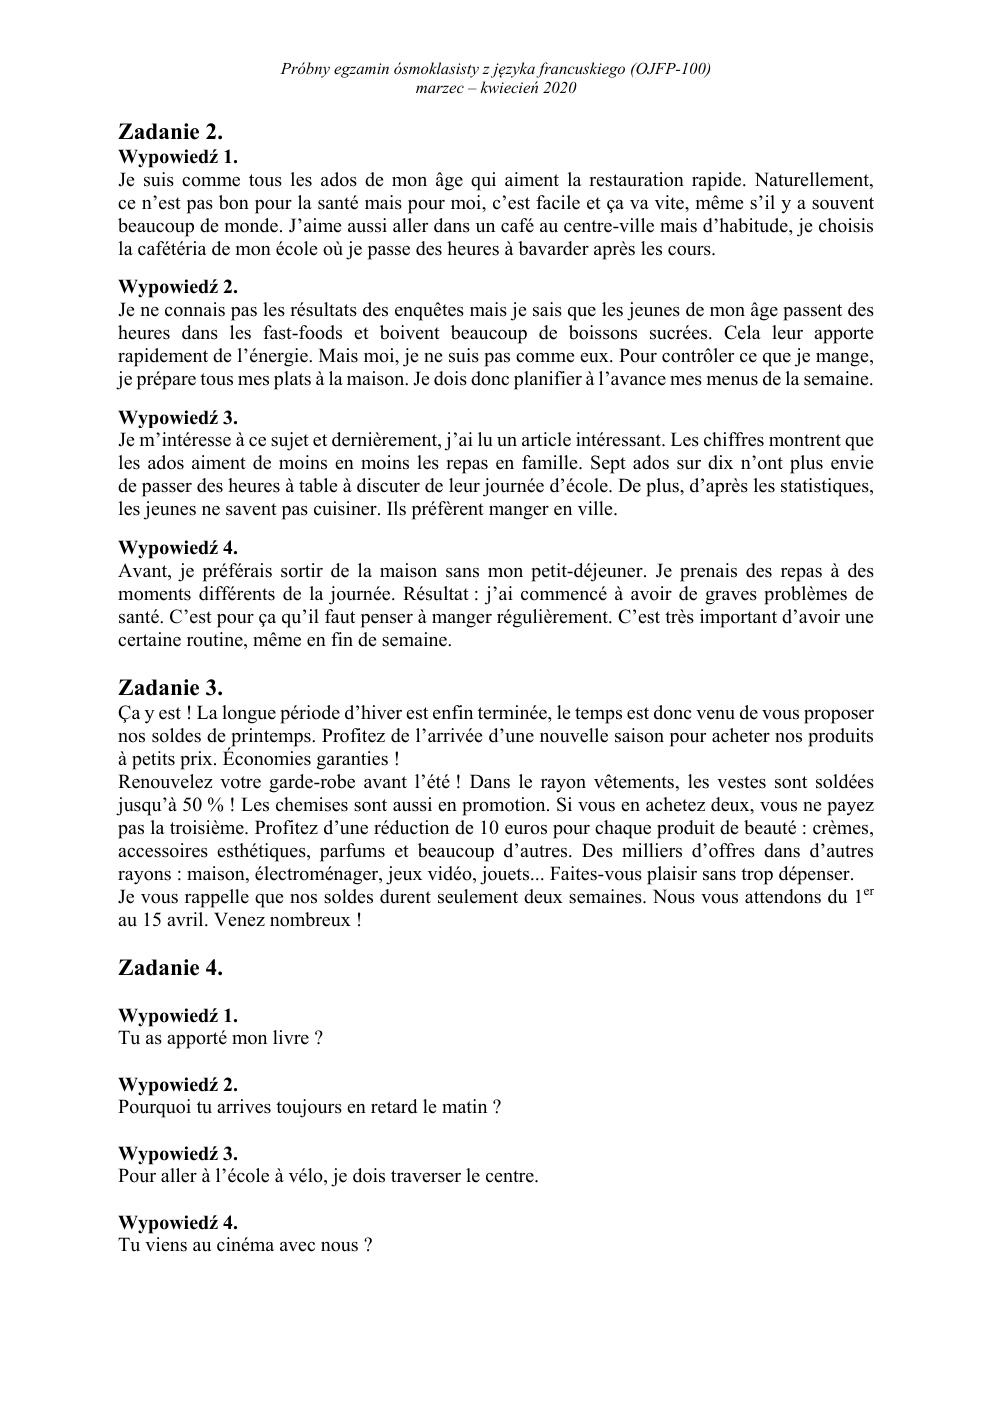 transkrypcja - francuski - egzamin ósmoklasisty 2020 próbny-2